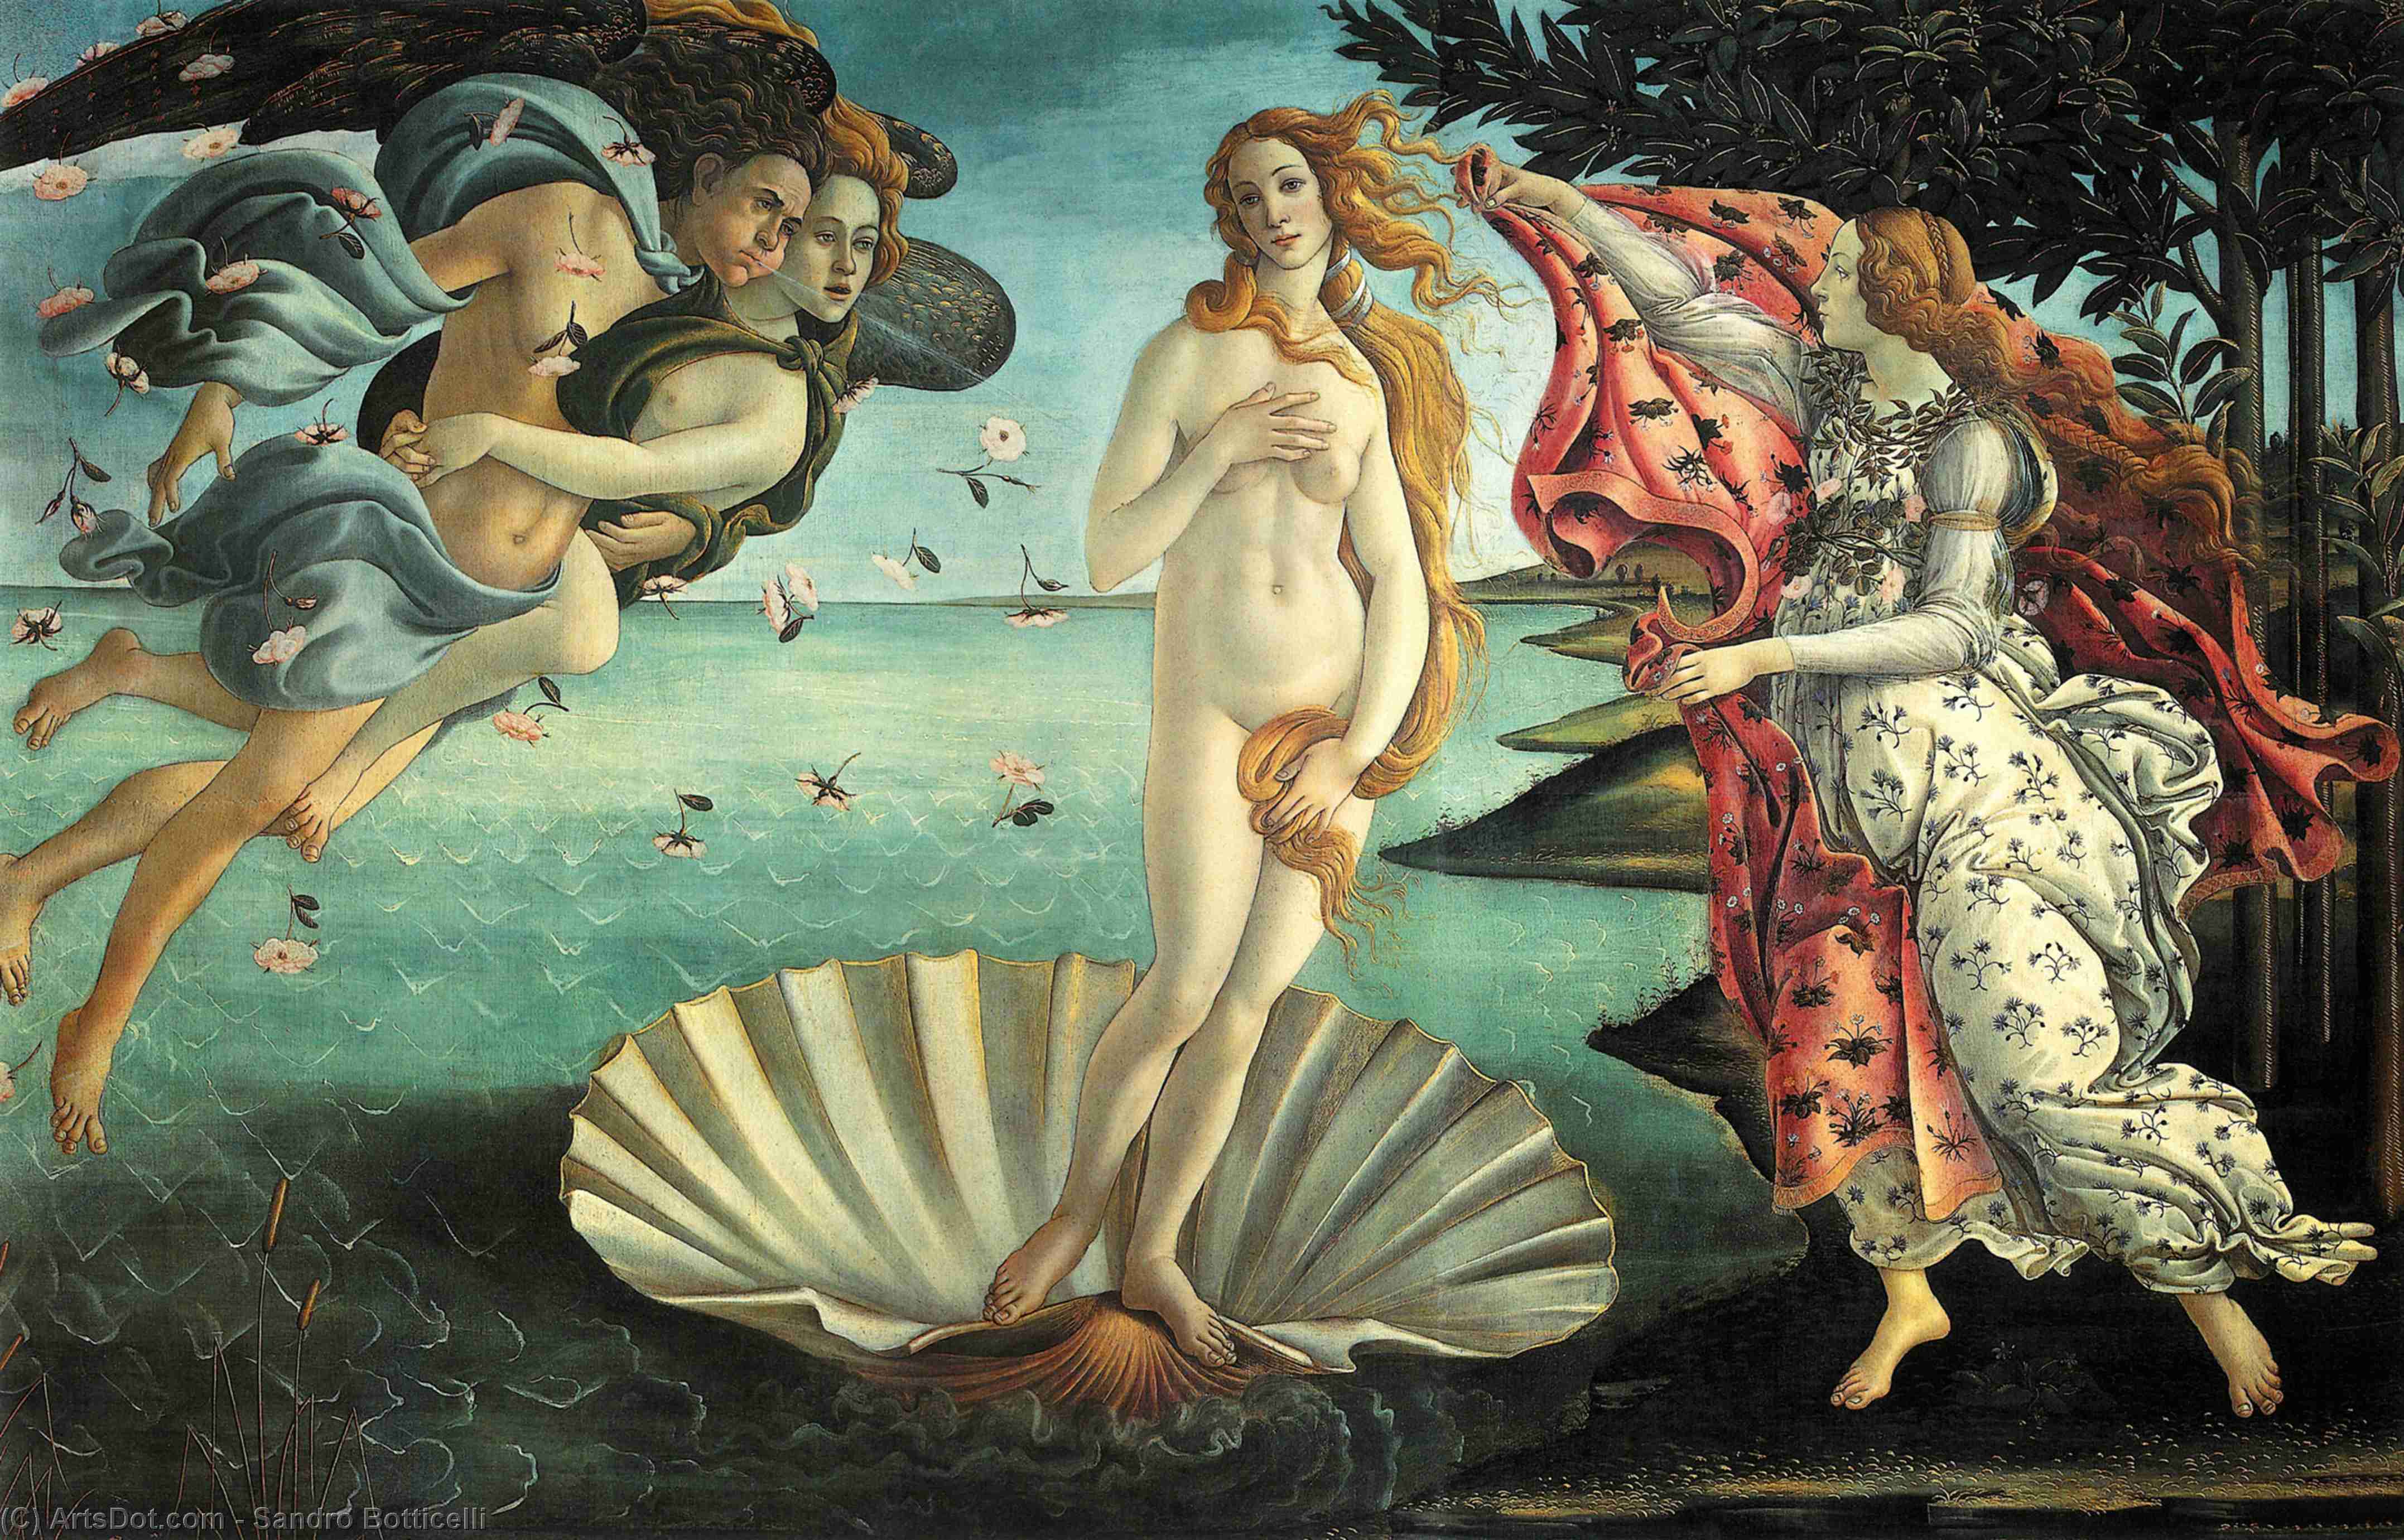 Achat Reproductions De Peintures La naissance de Vénus, 1486 de Sandro Botticelli (1445-1510, Italy) | ArtsDot.com